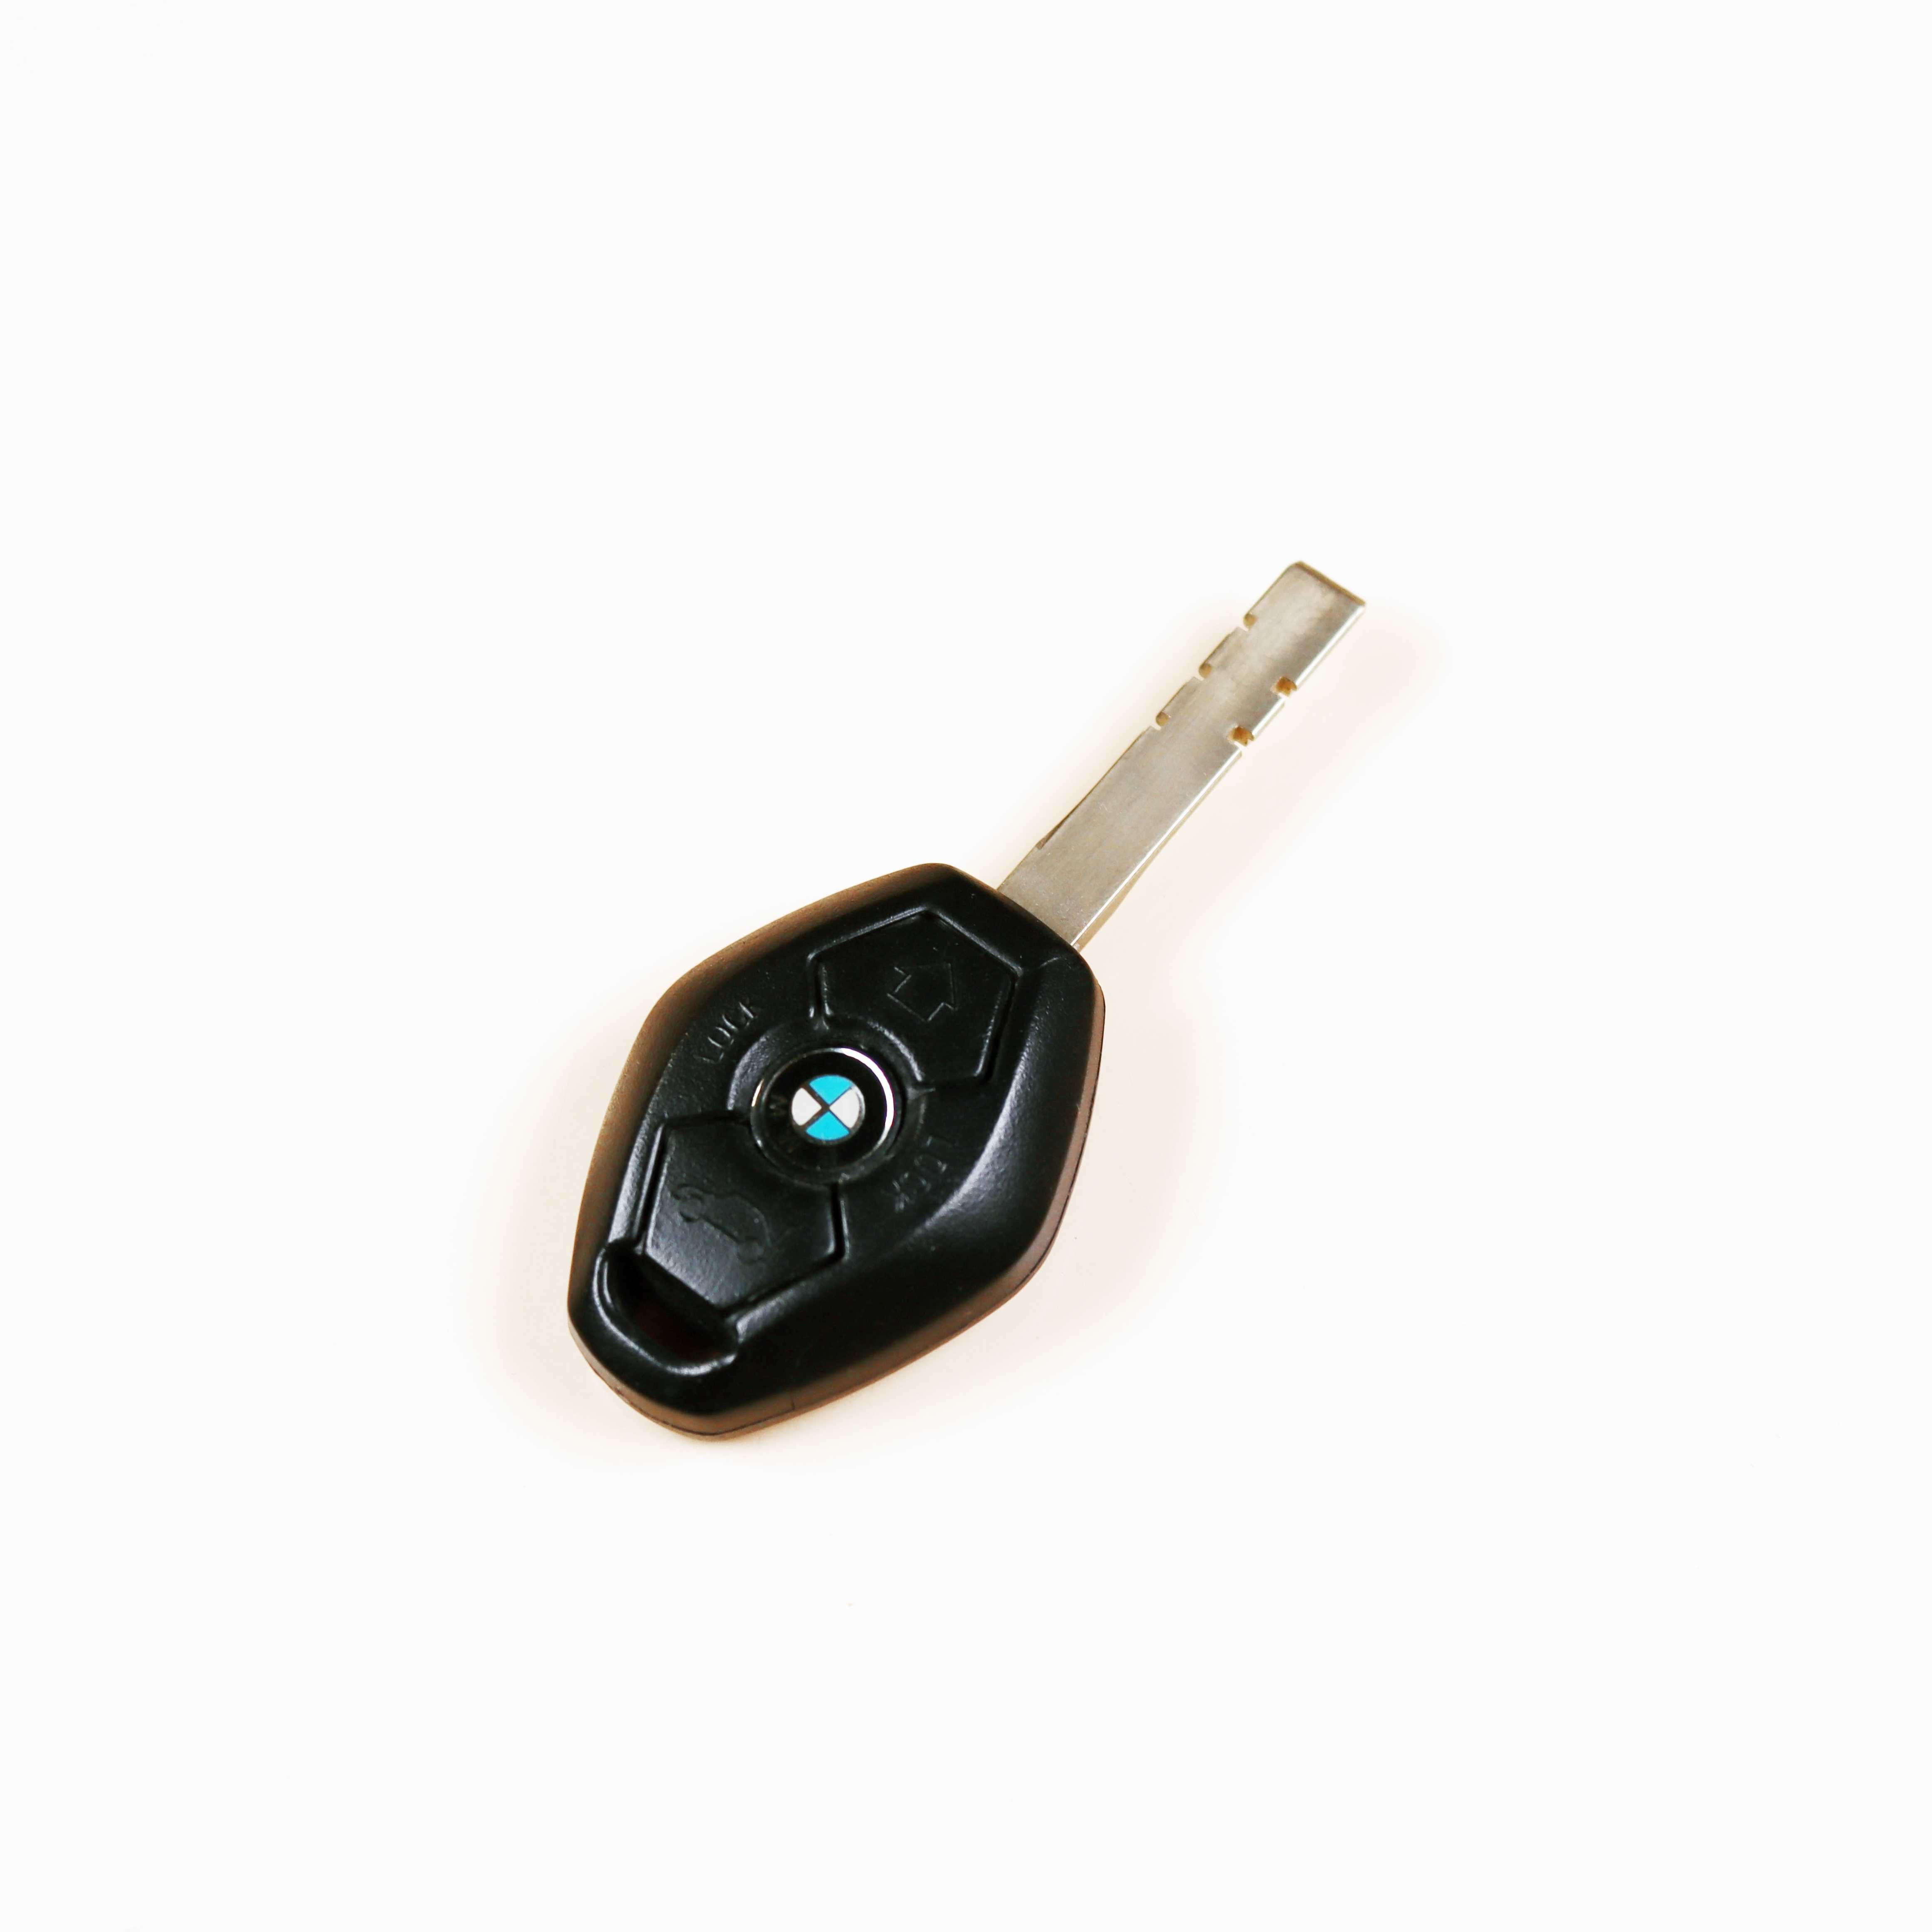 Ключ от машины (автомобиля) BMW (БМВ)